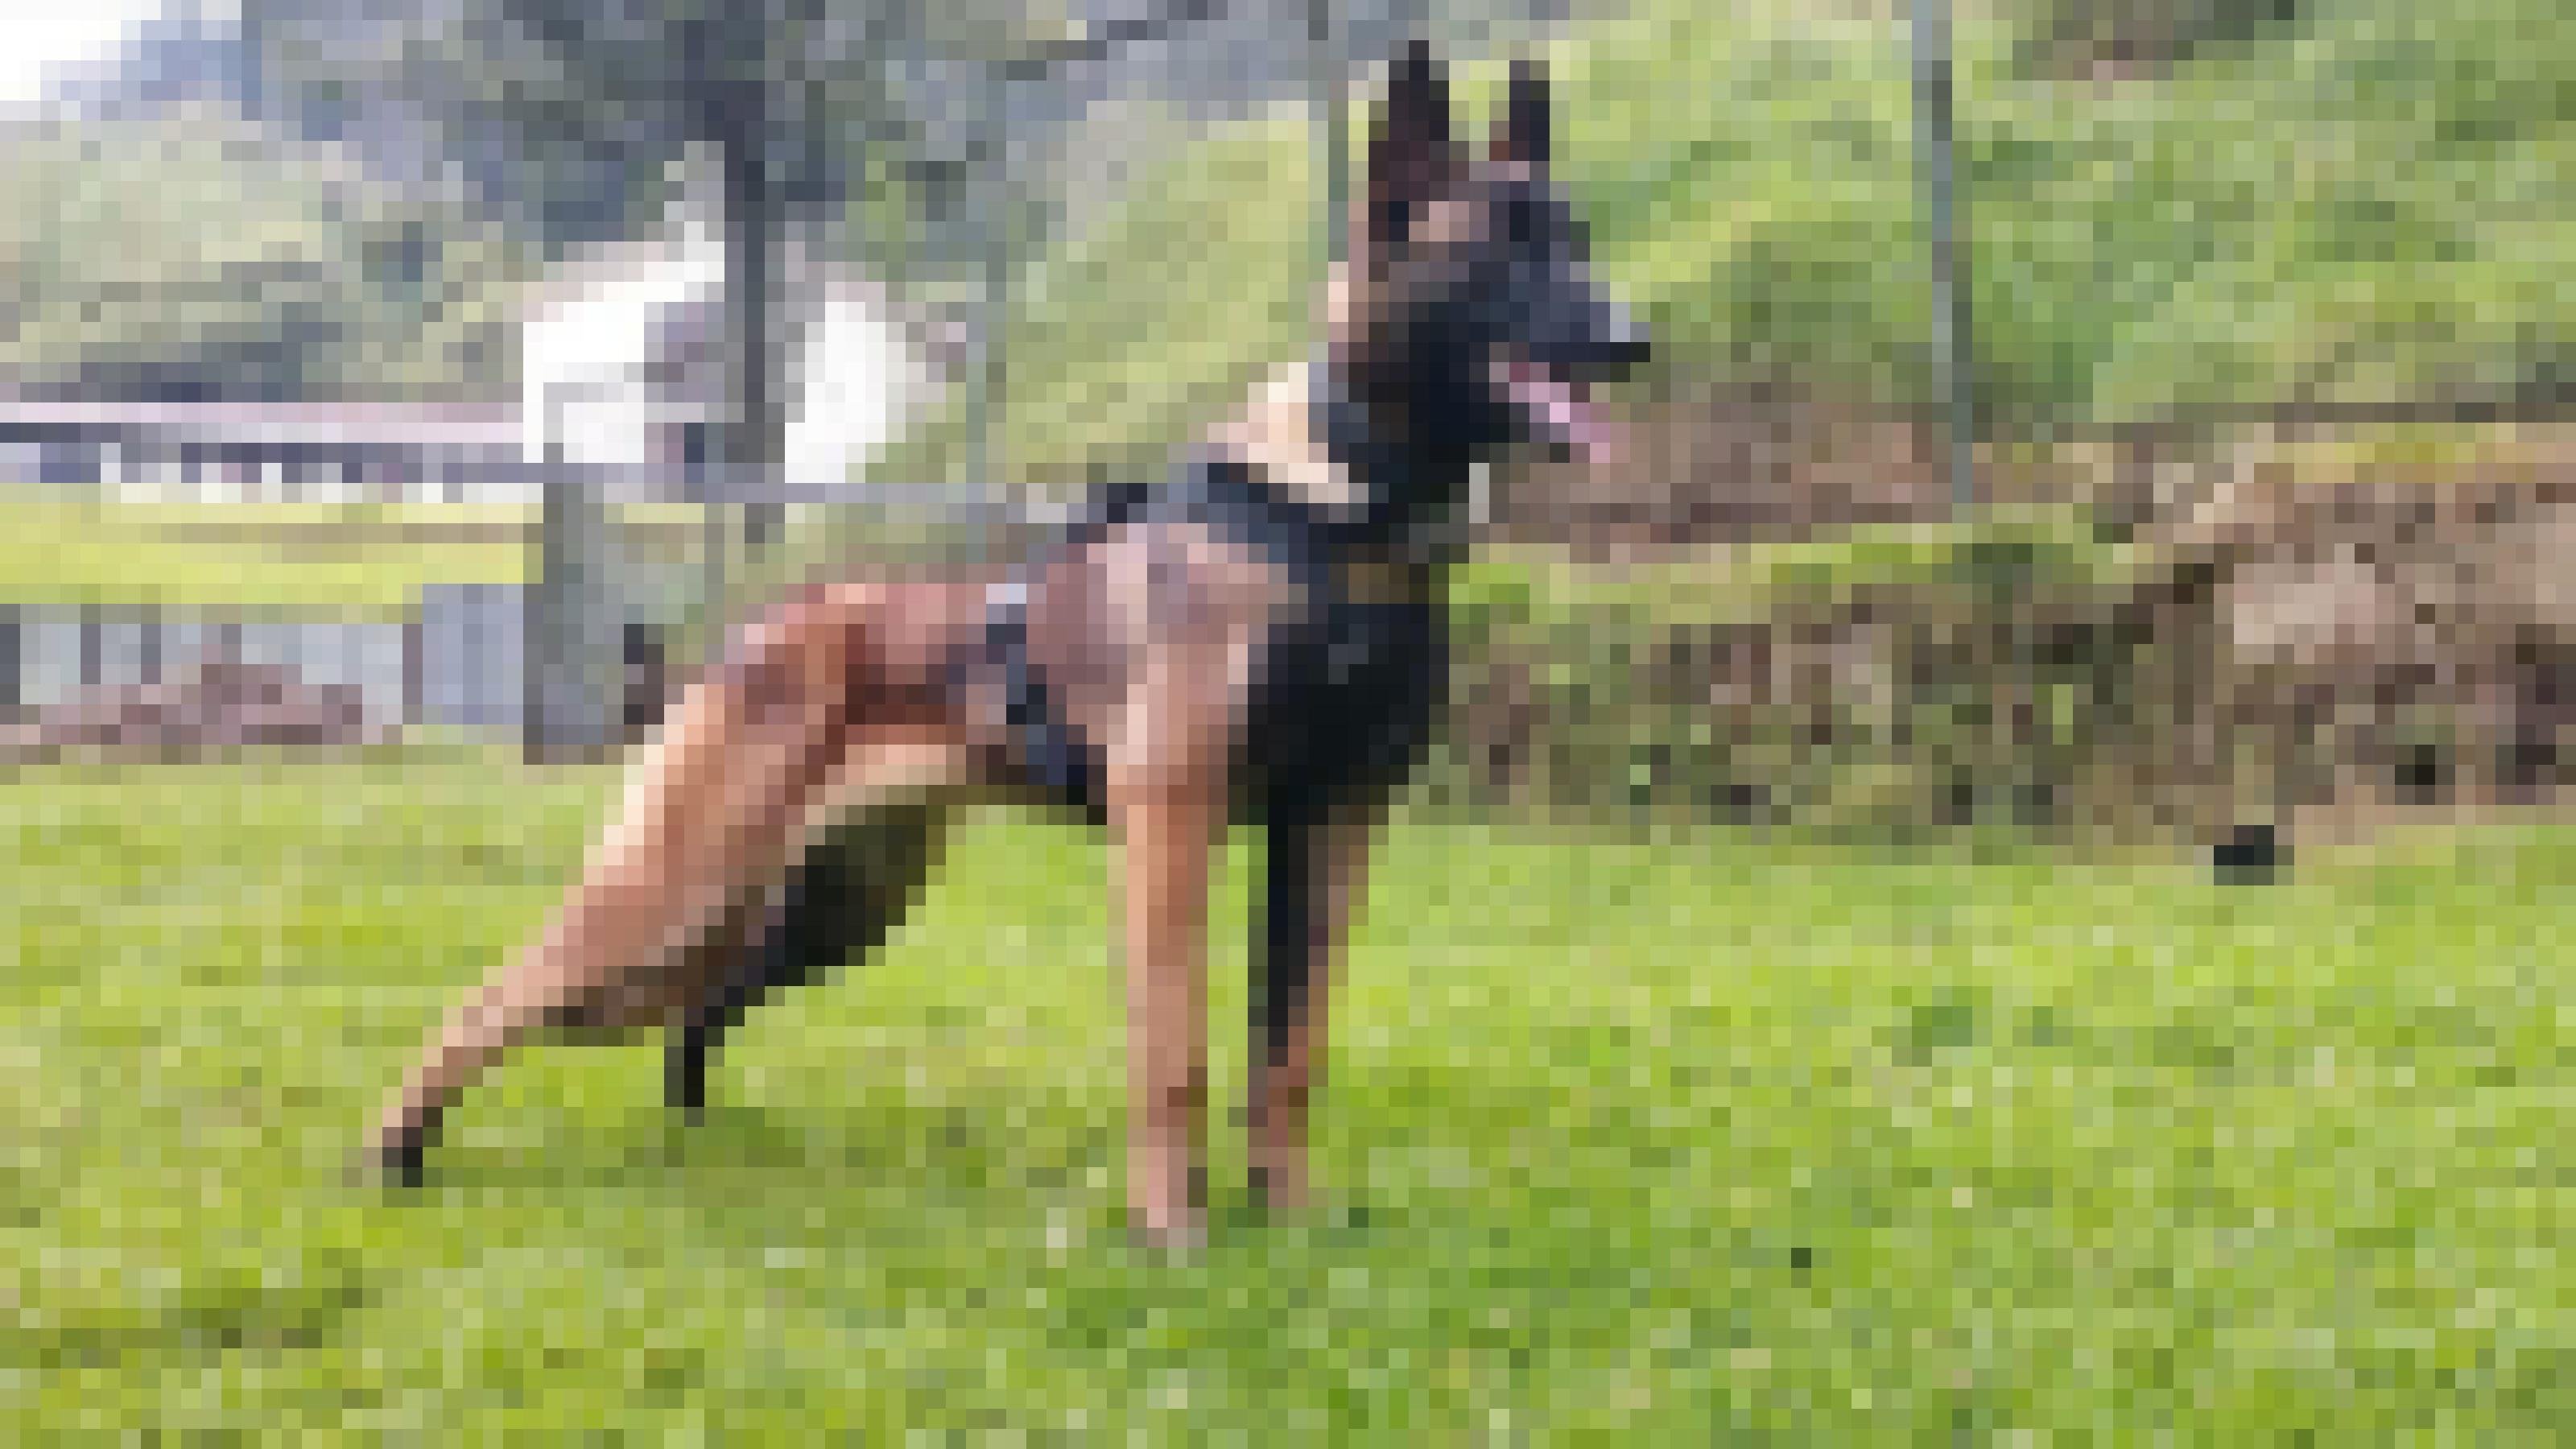 Wohl auf einem Trainingsgelände steht ein angespannter Schäferhund mit offener Schnauze. Er ist an einer Leine und trägt eine Art Weste um die Brust.